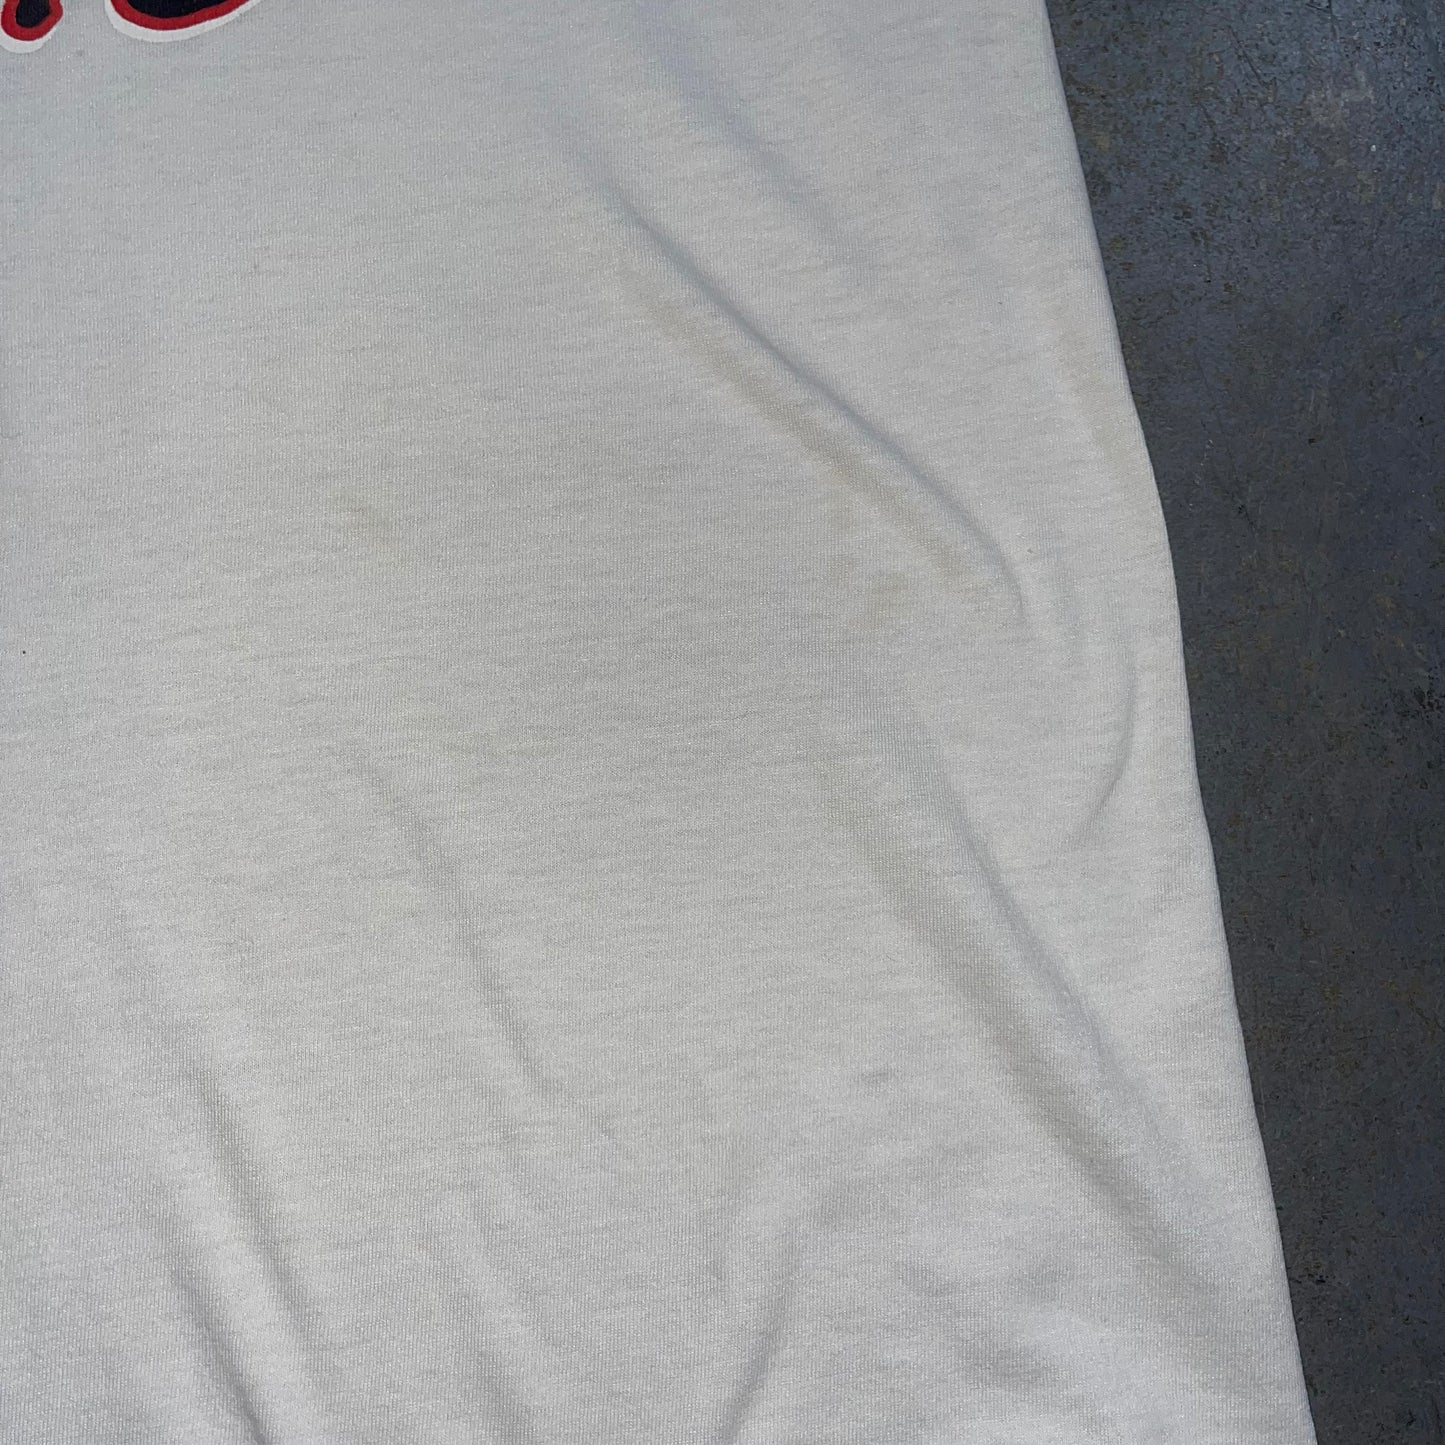 Y2K Weekend Warrior Nascar T-Shirt. Size XL